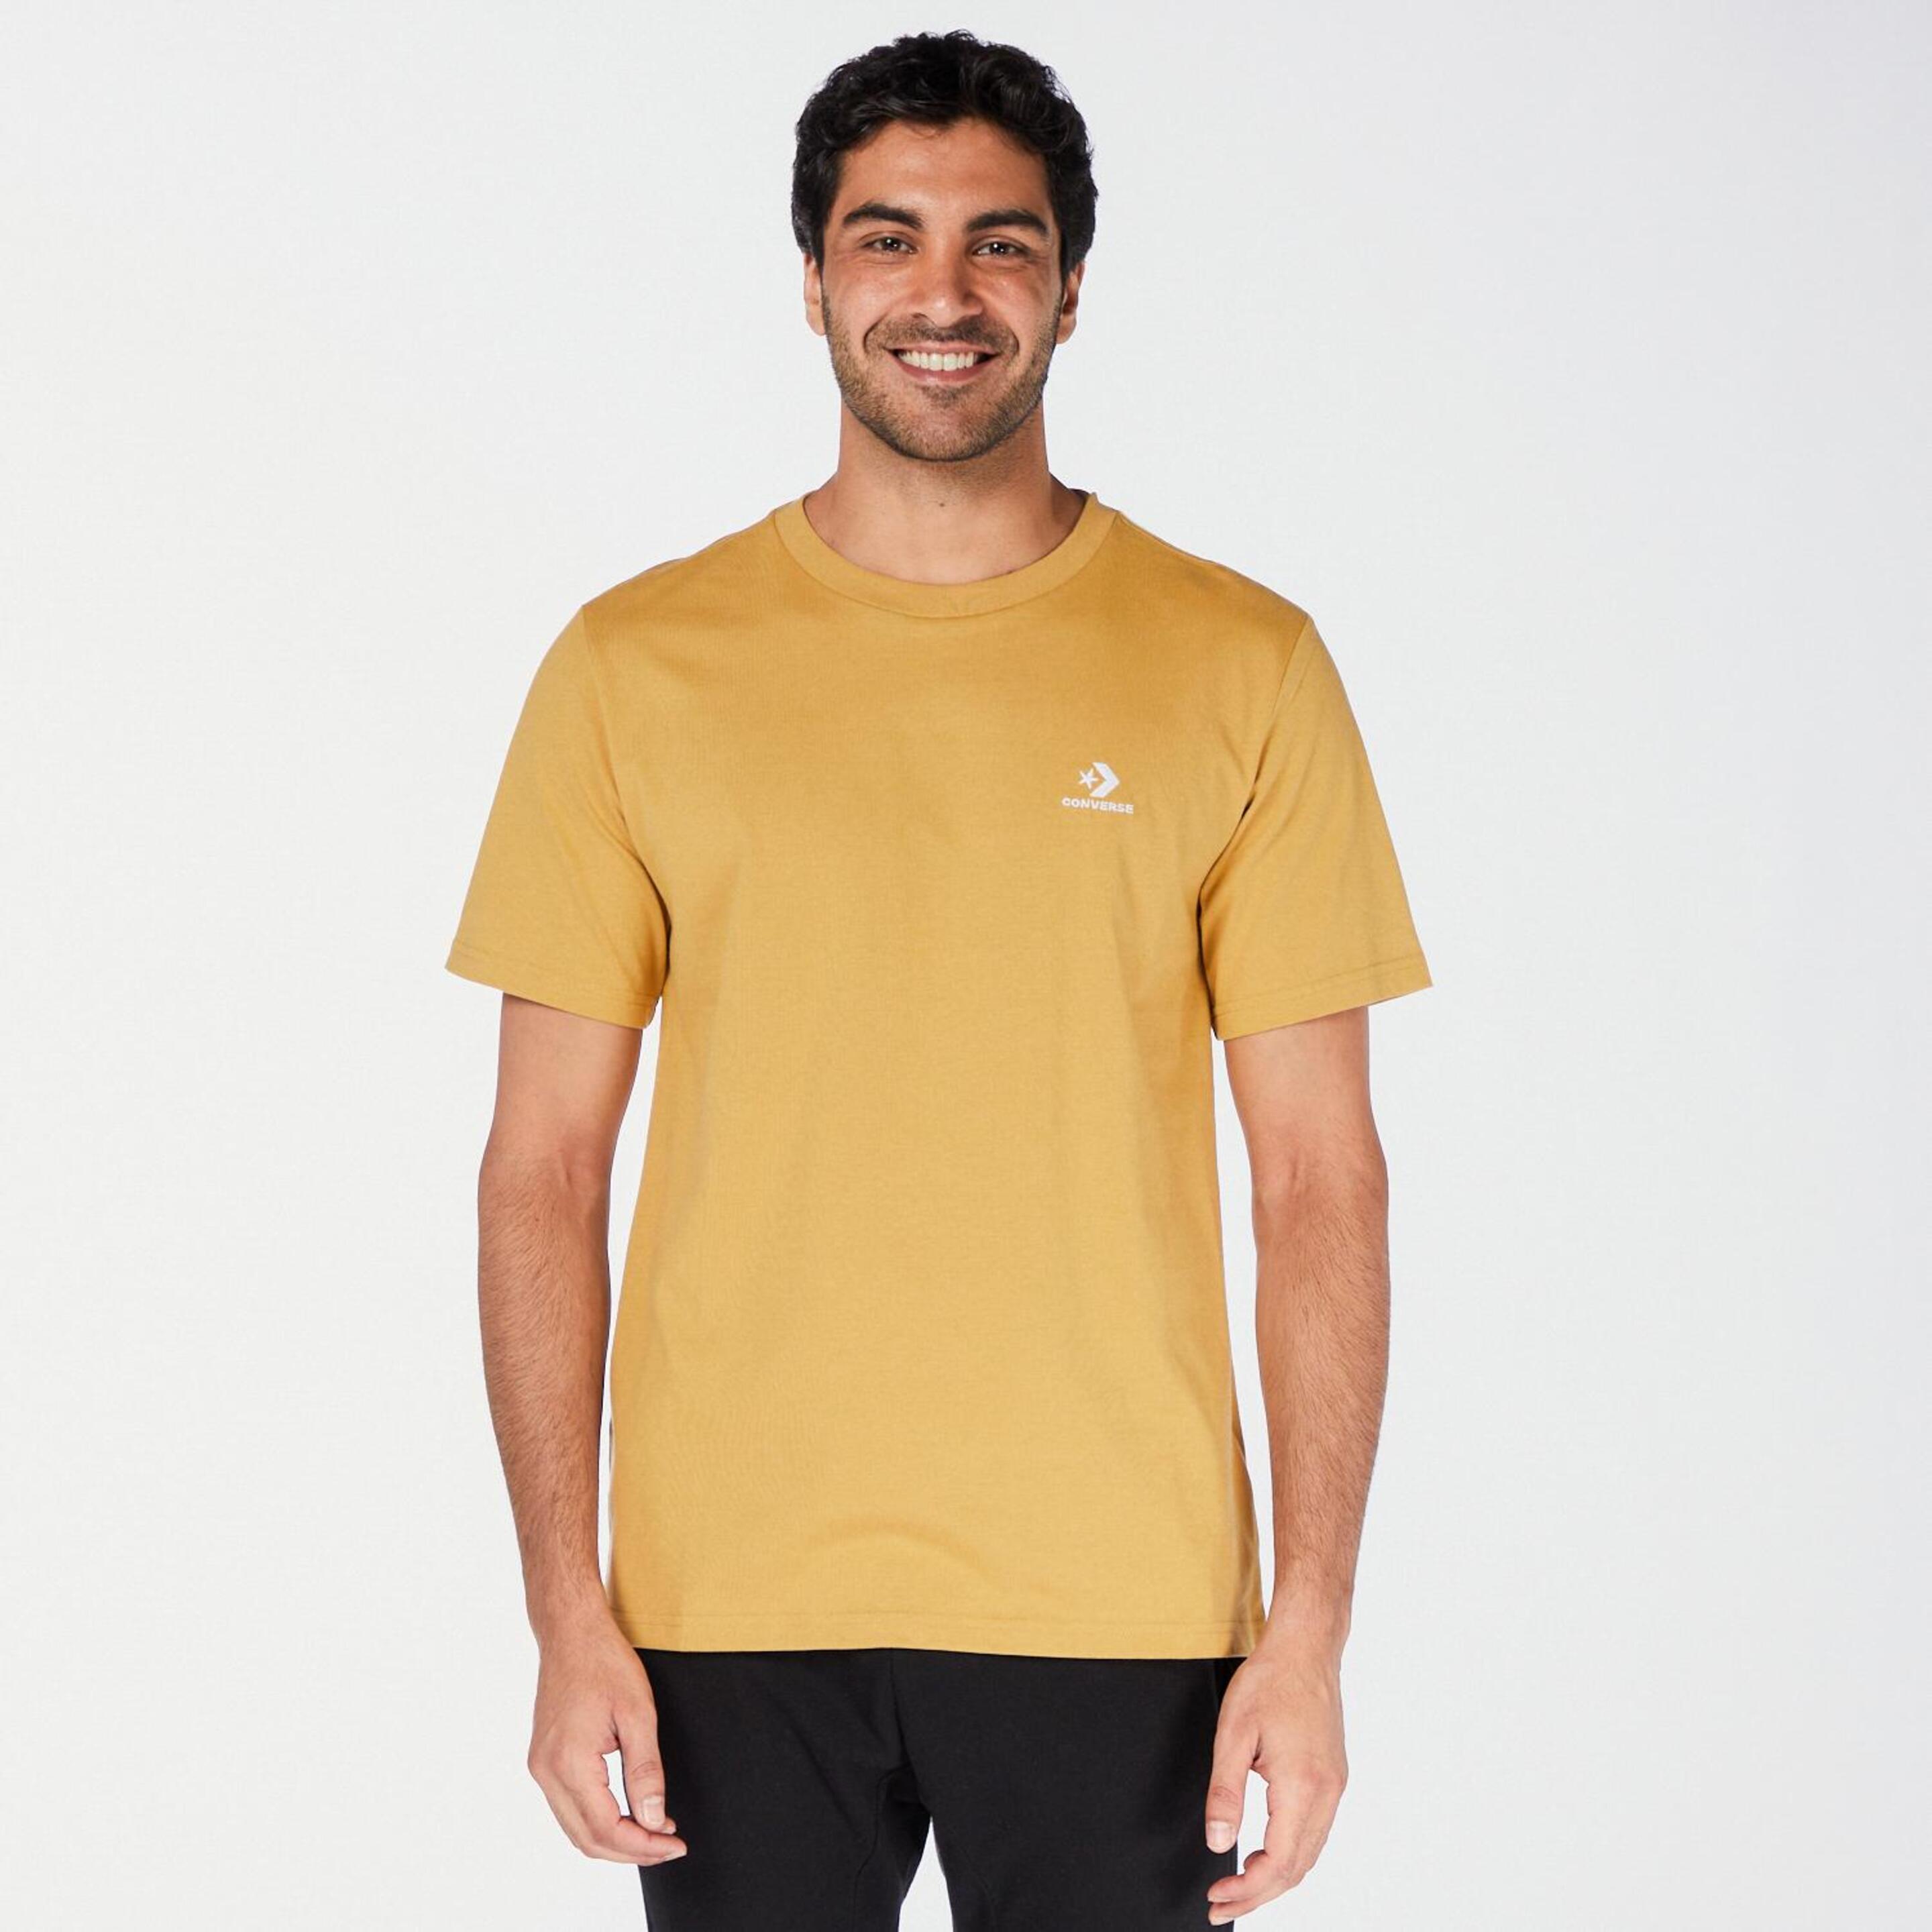 Converse Star - marron - Camiseta Hombre